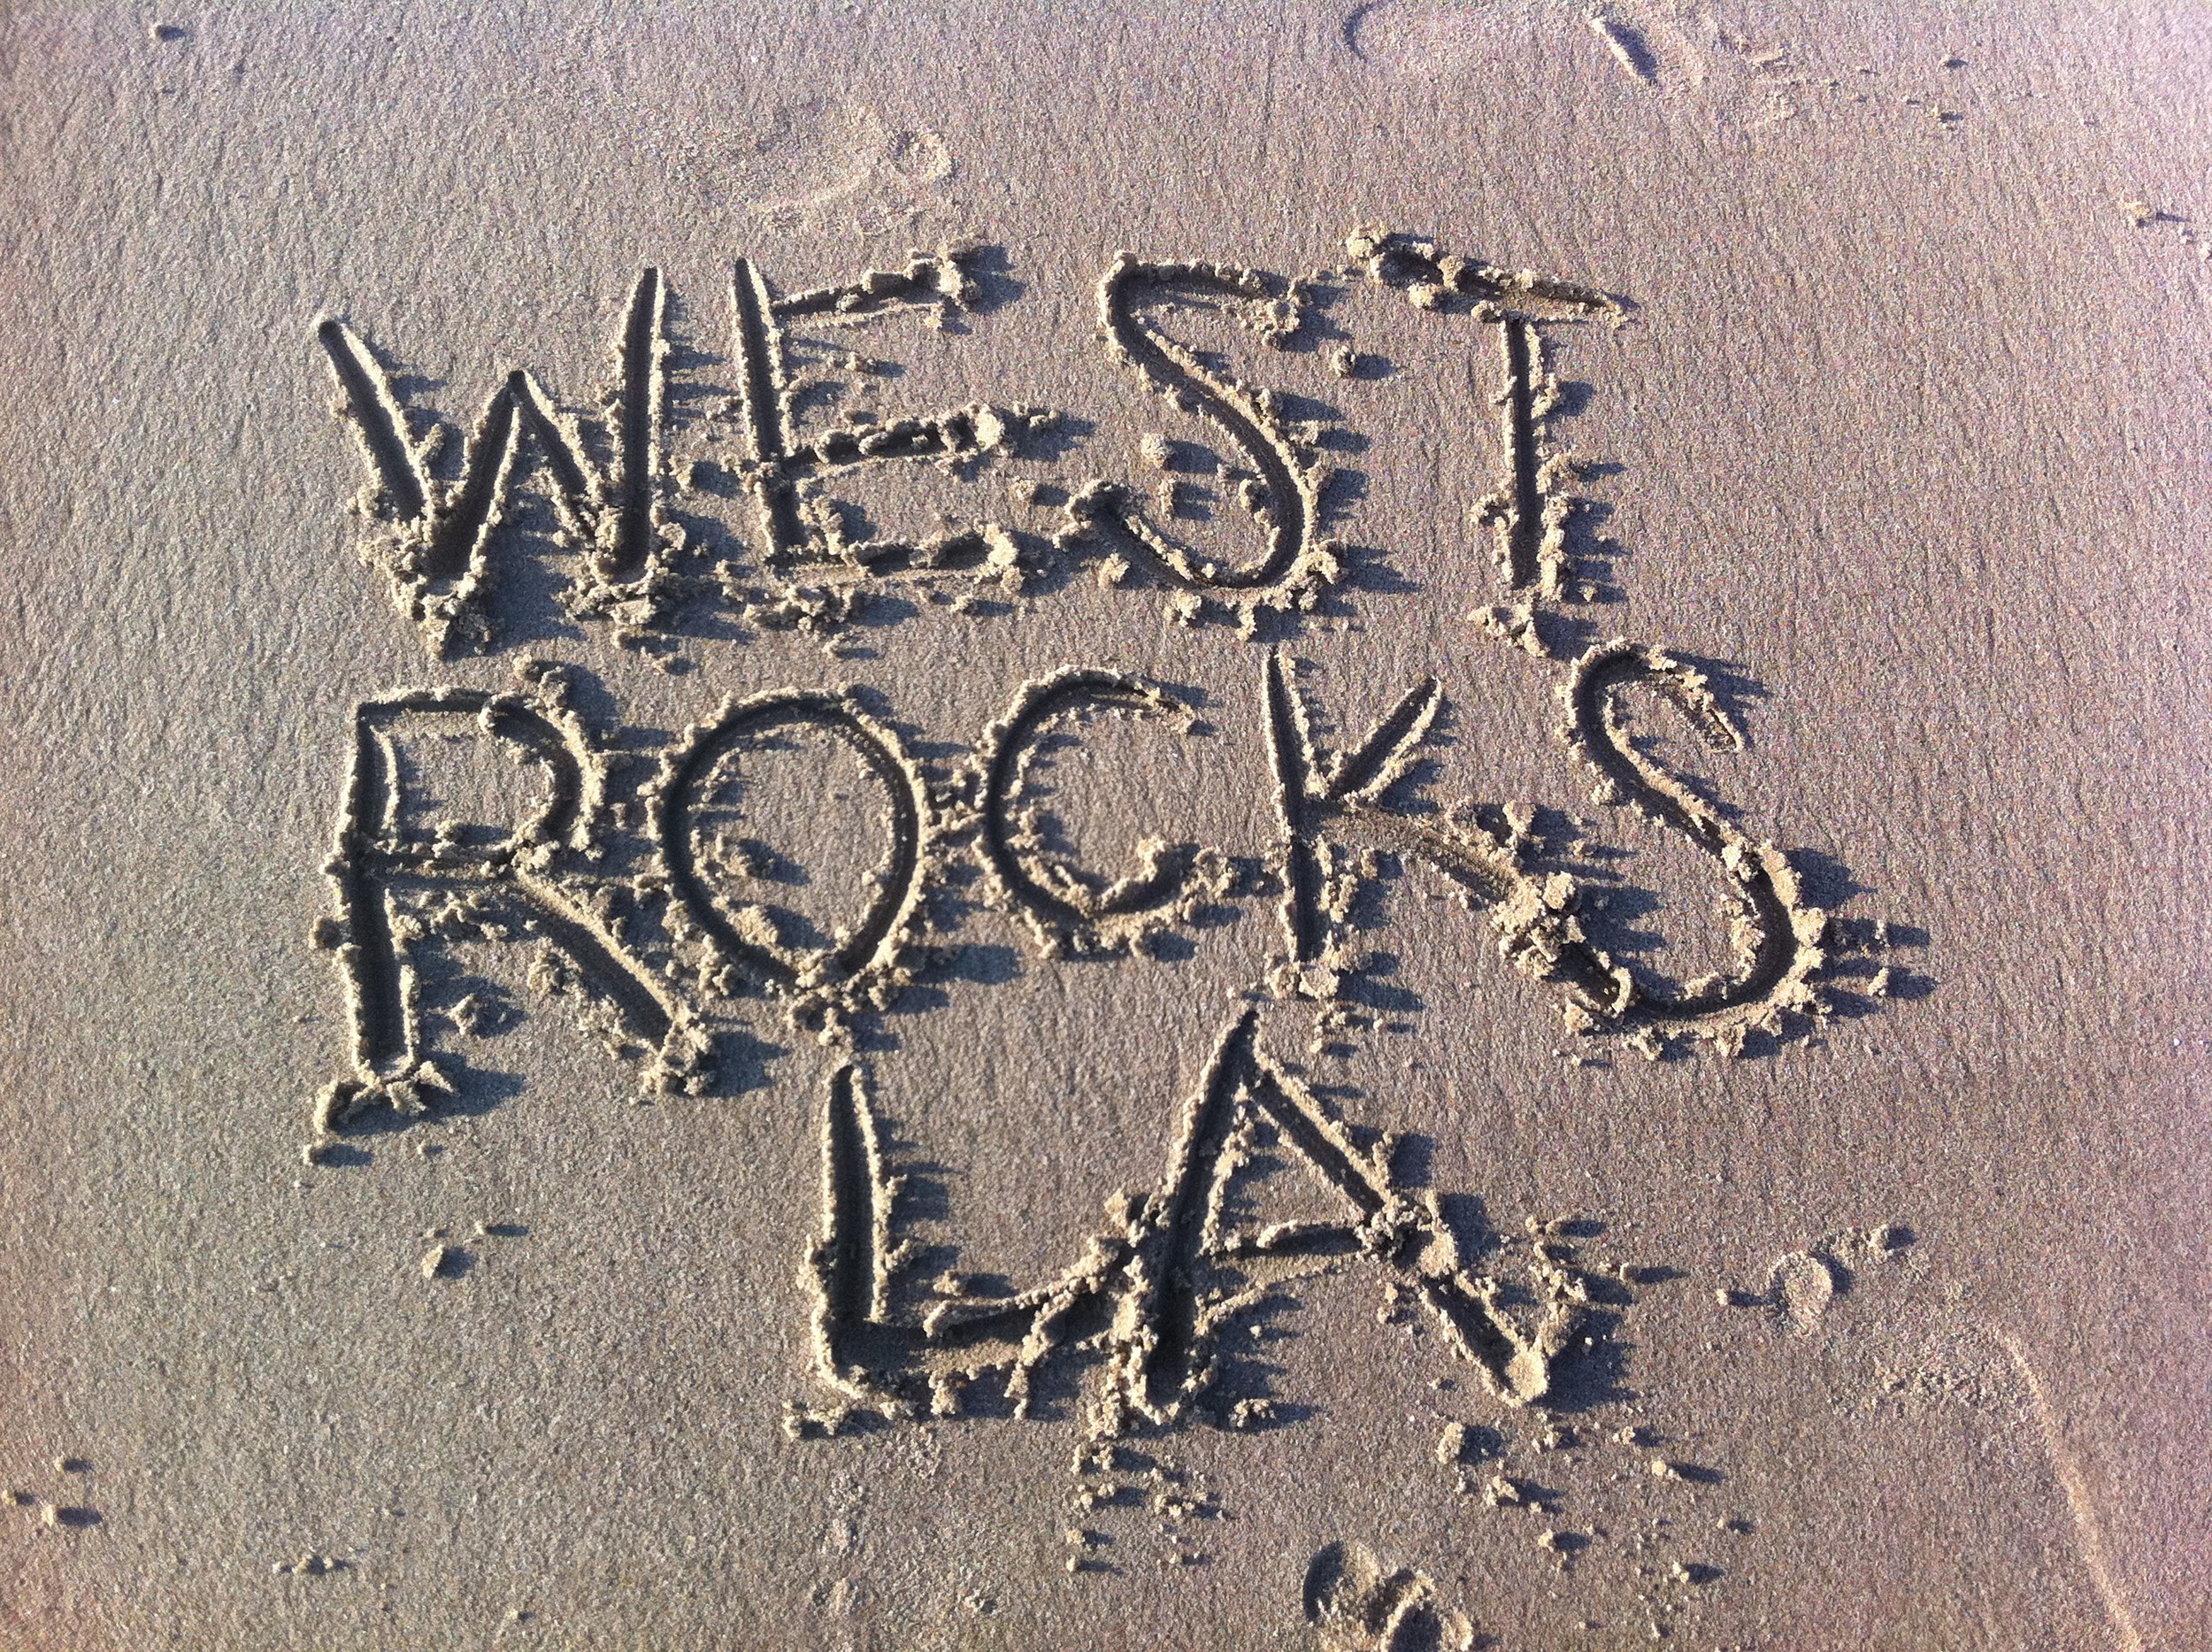 west rocks la in sand.JPG